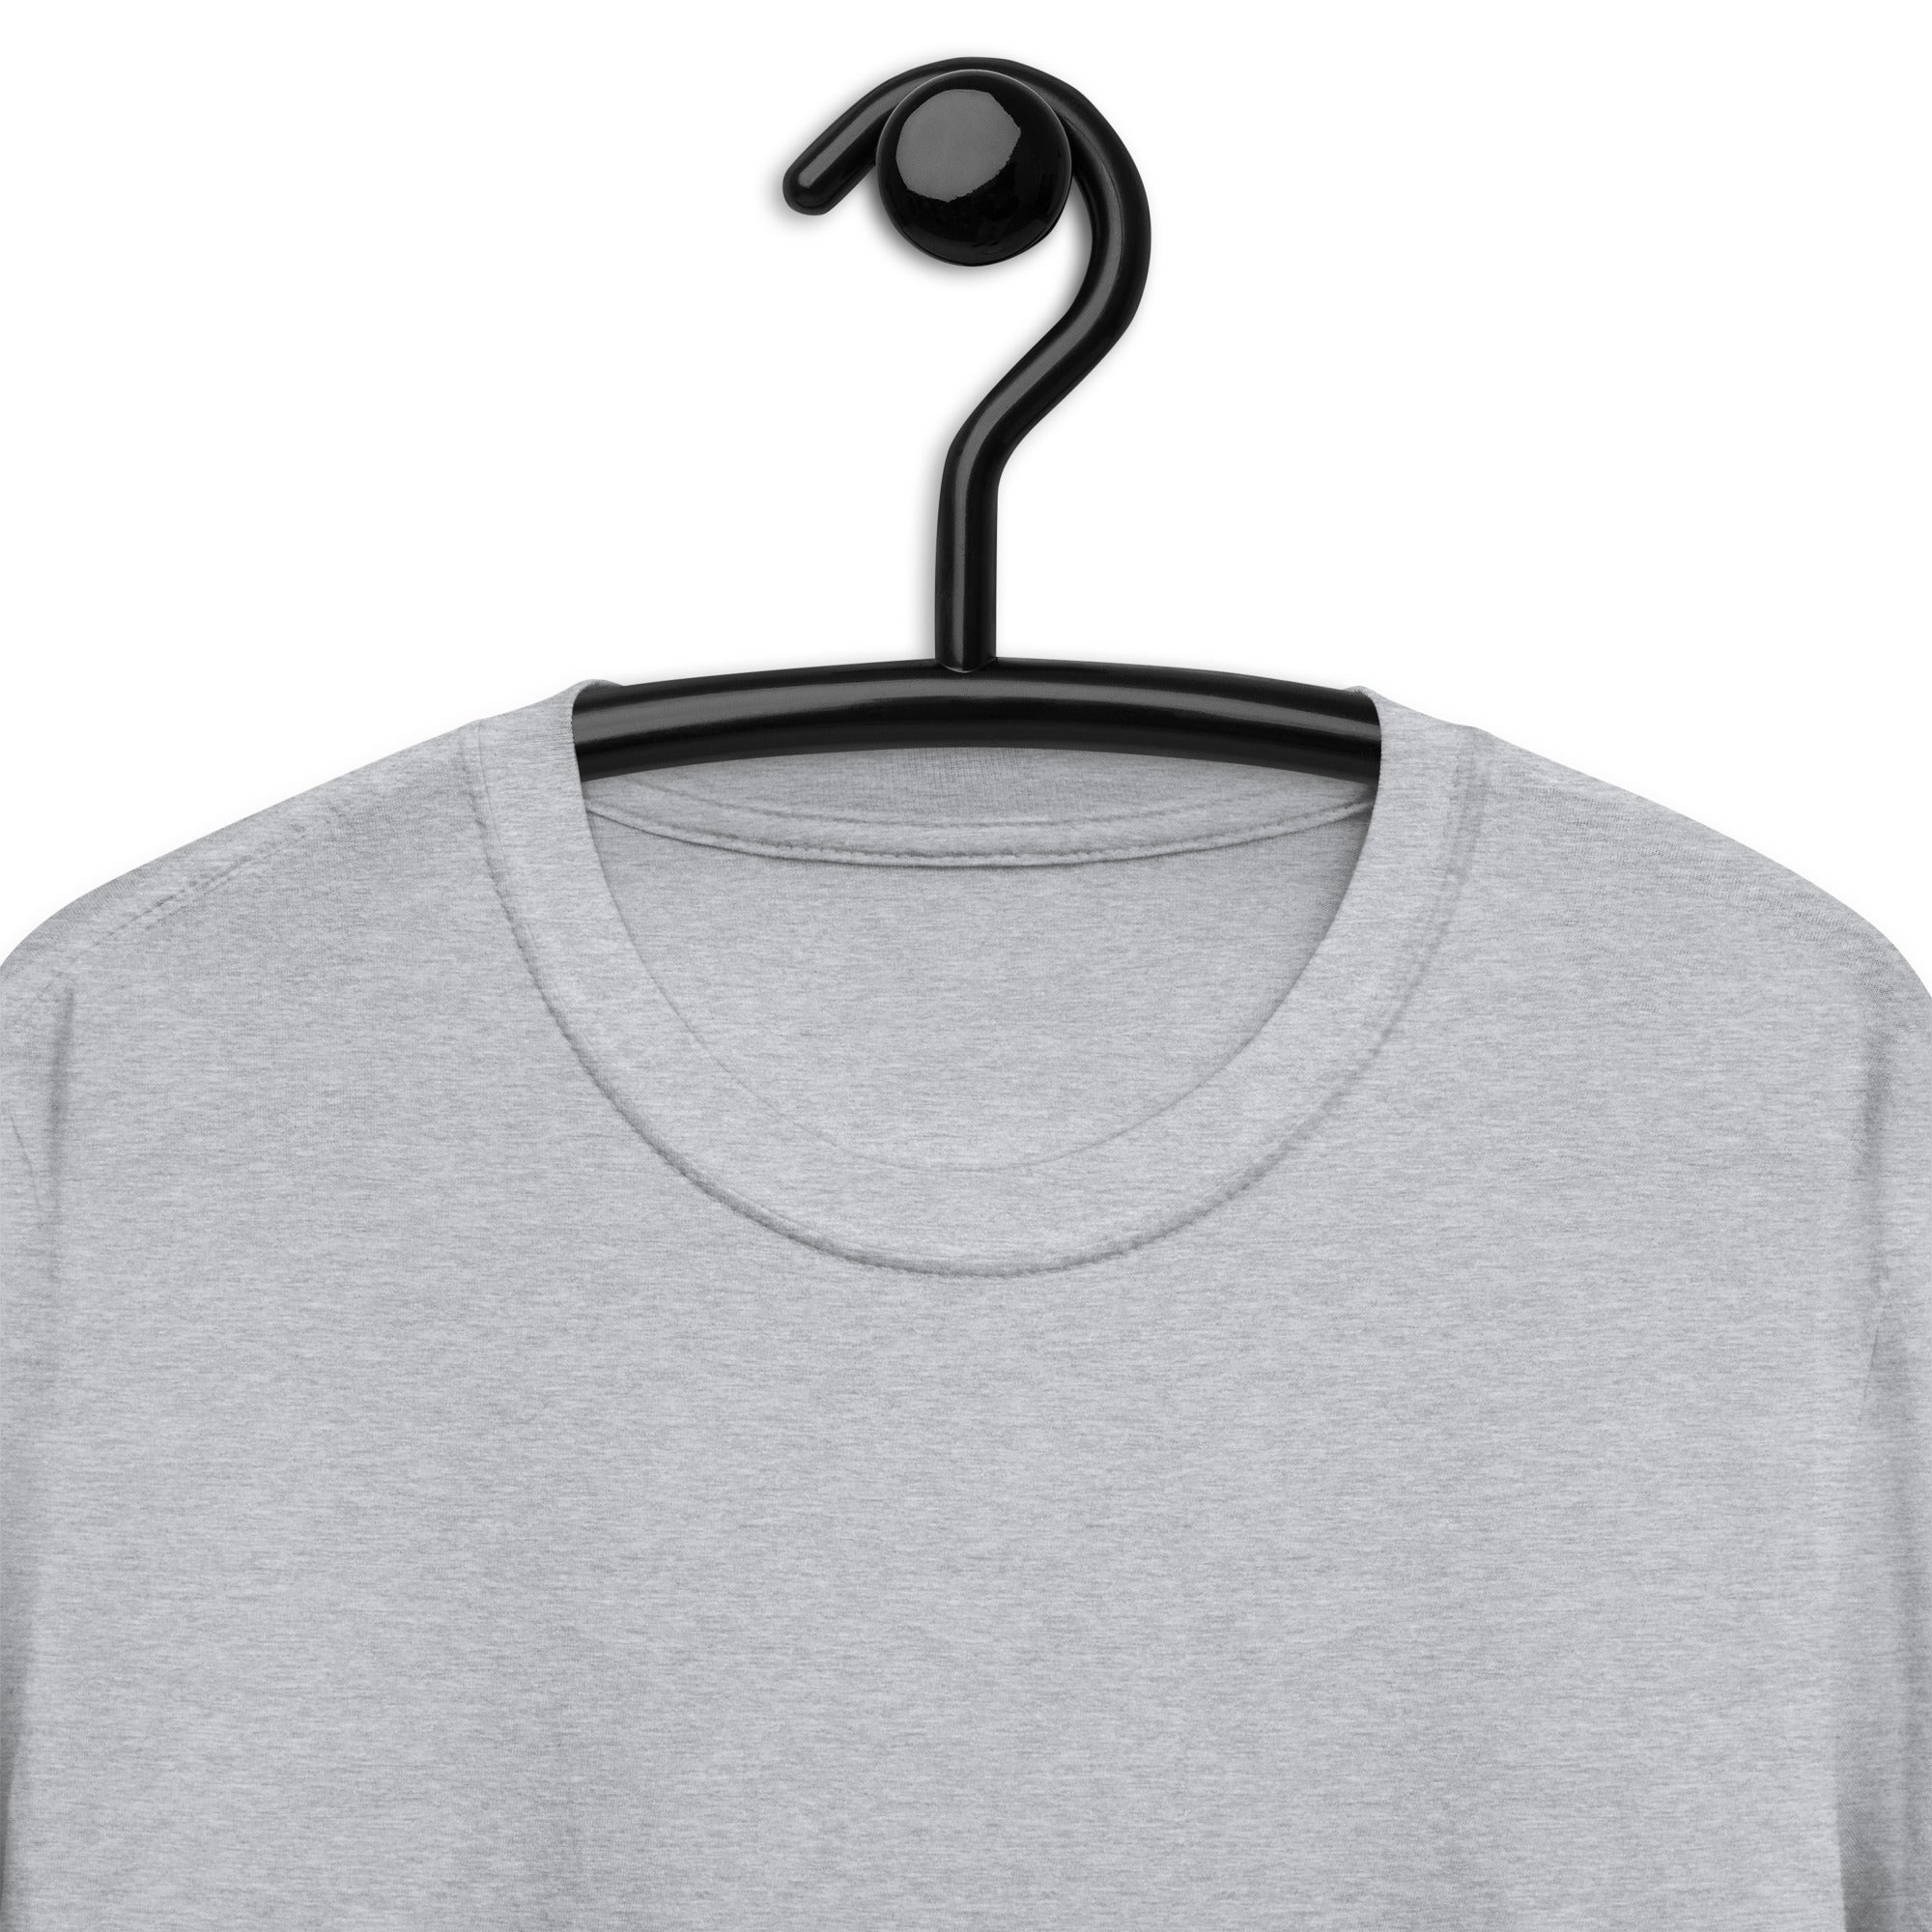 Short-Sleeve Unisex T-Shirt | Freedom